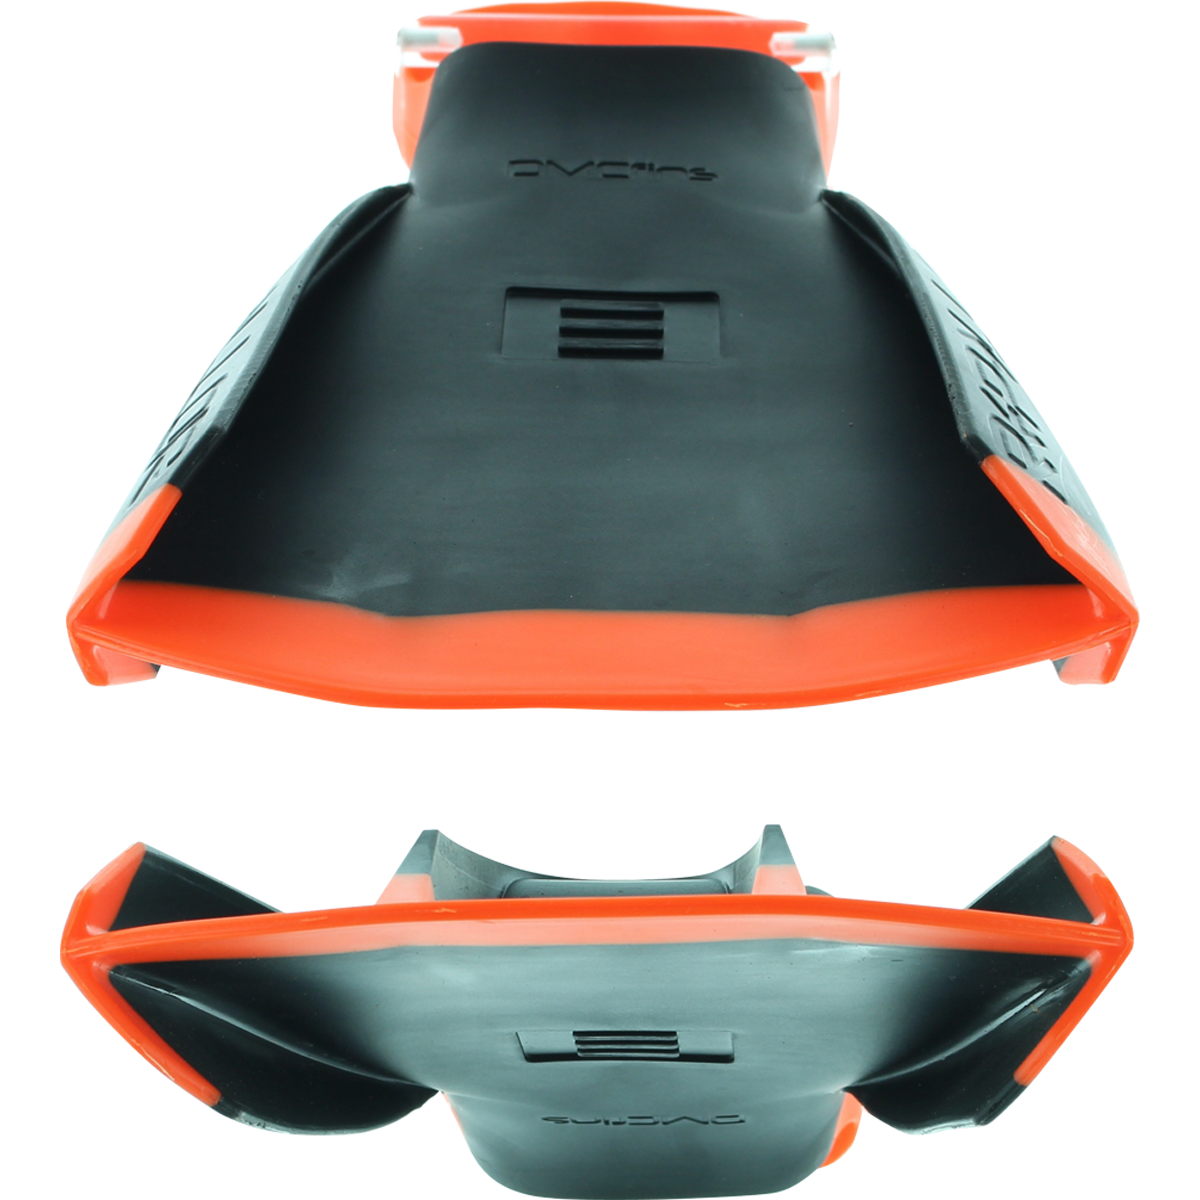 Dmc Repellor Swim Fins L-Black/Orange (Size10-11)